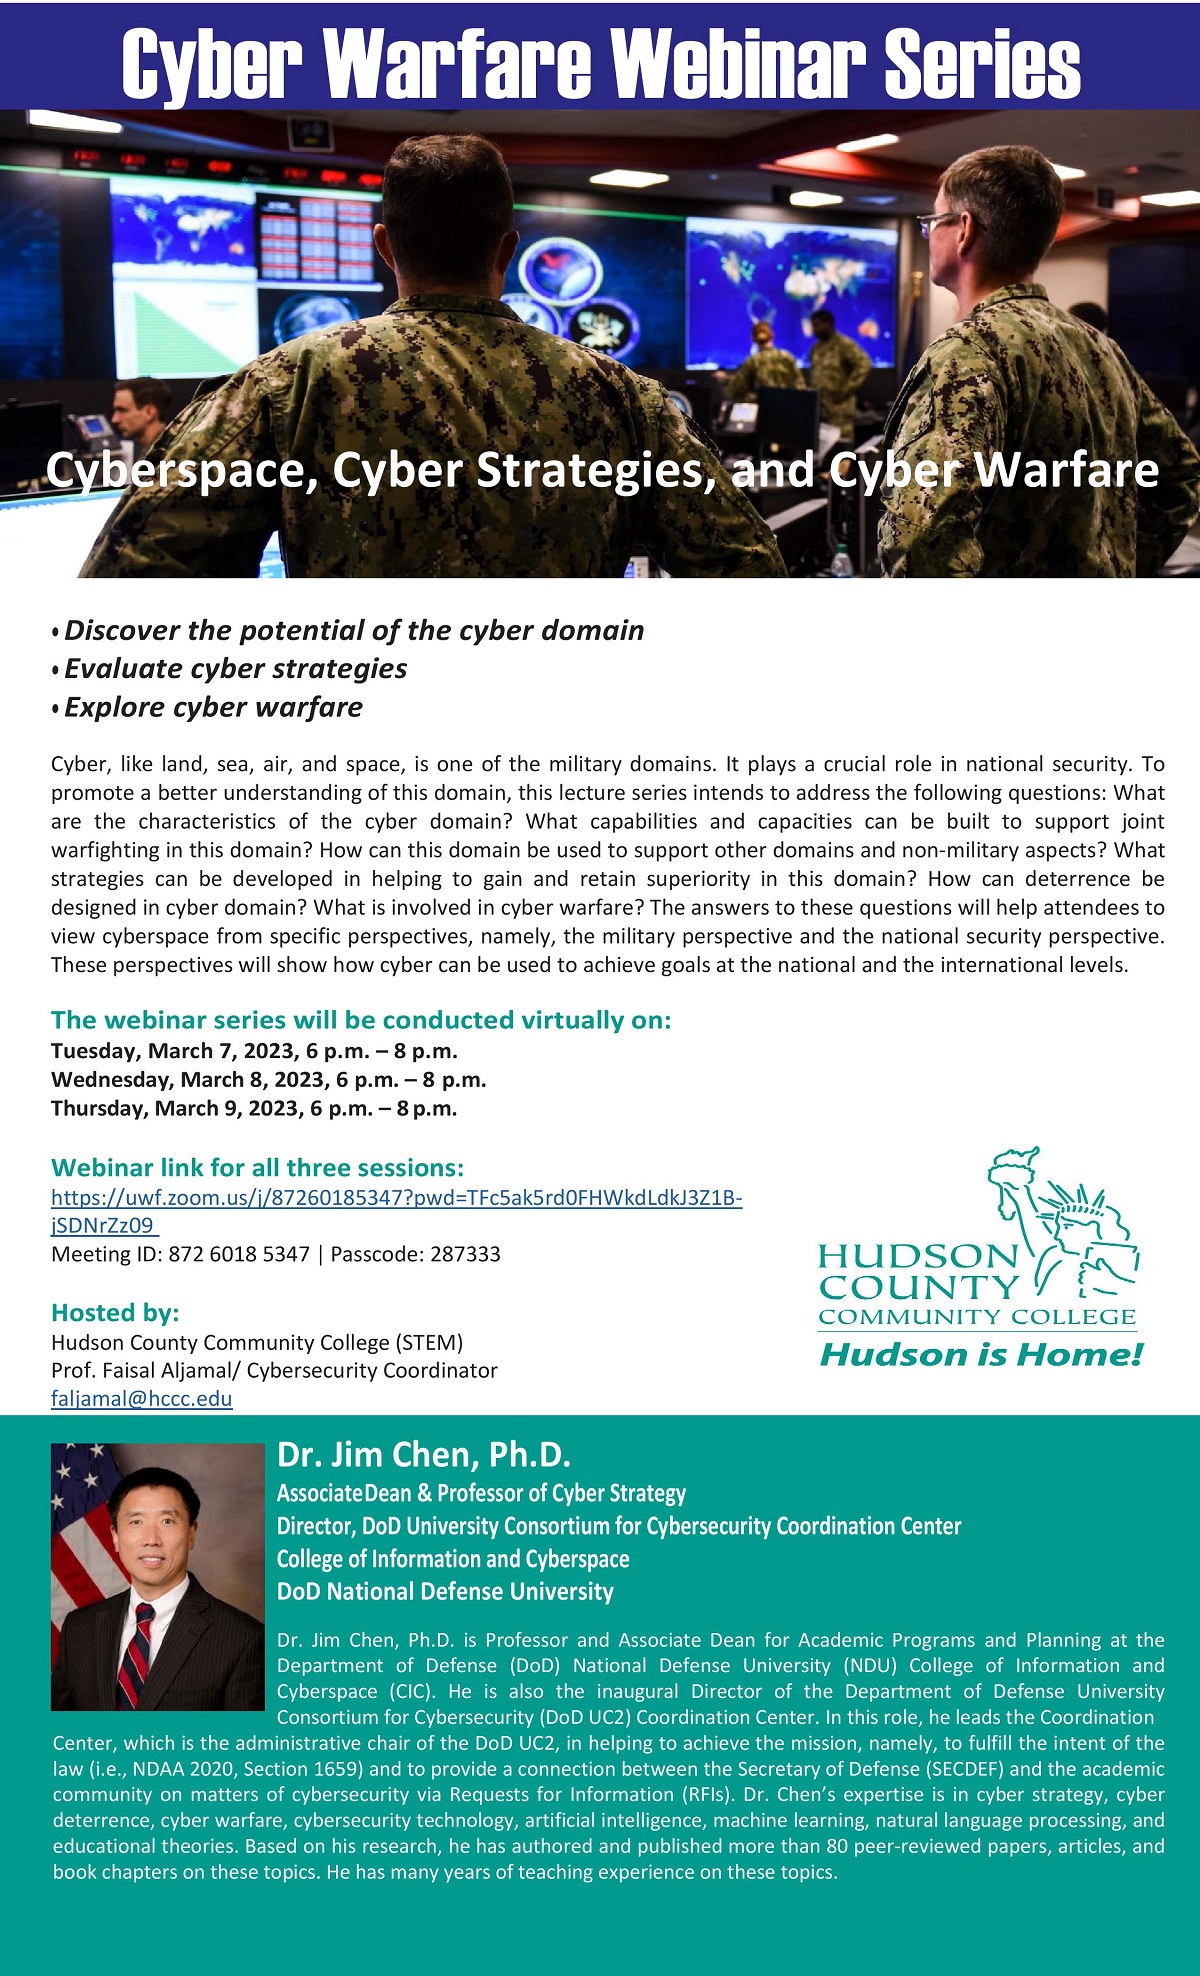 Serie de seminarios web sobre ciberseguridad